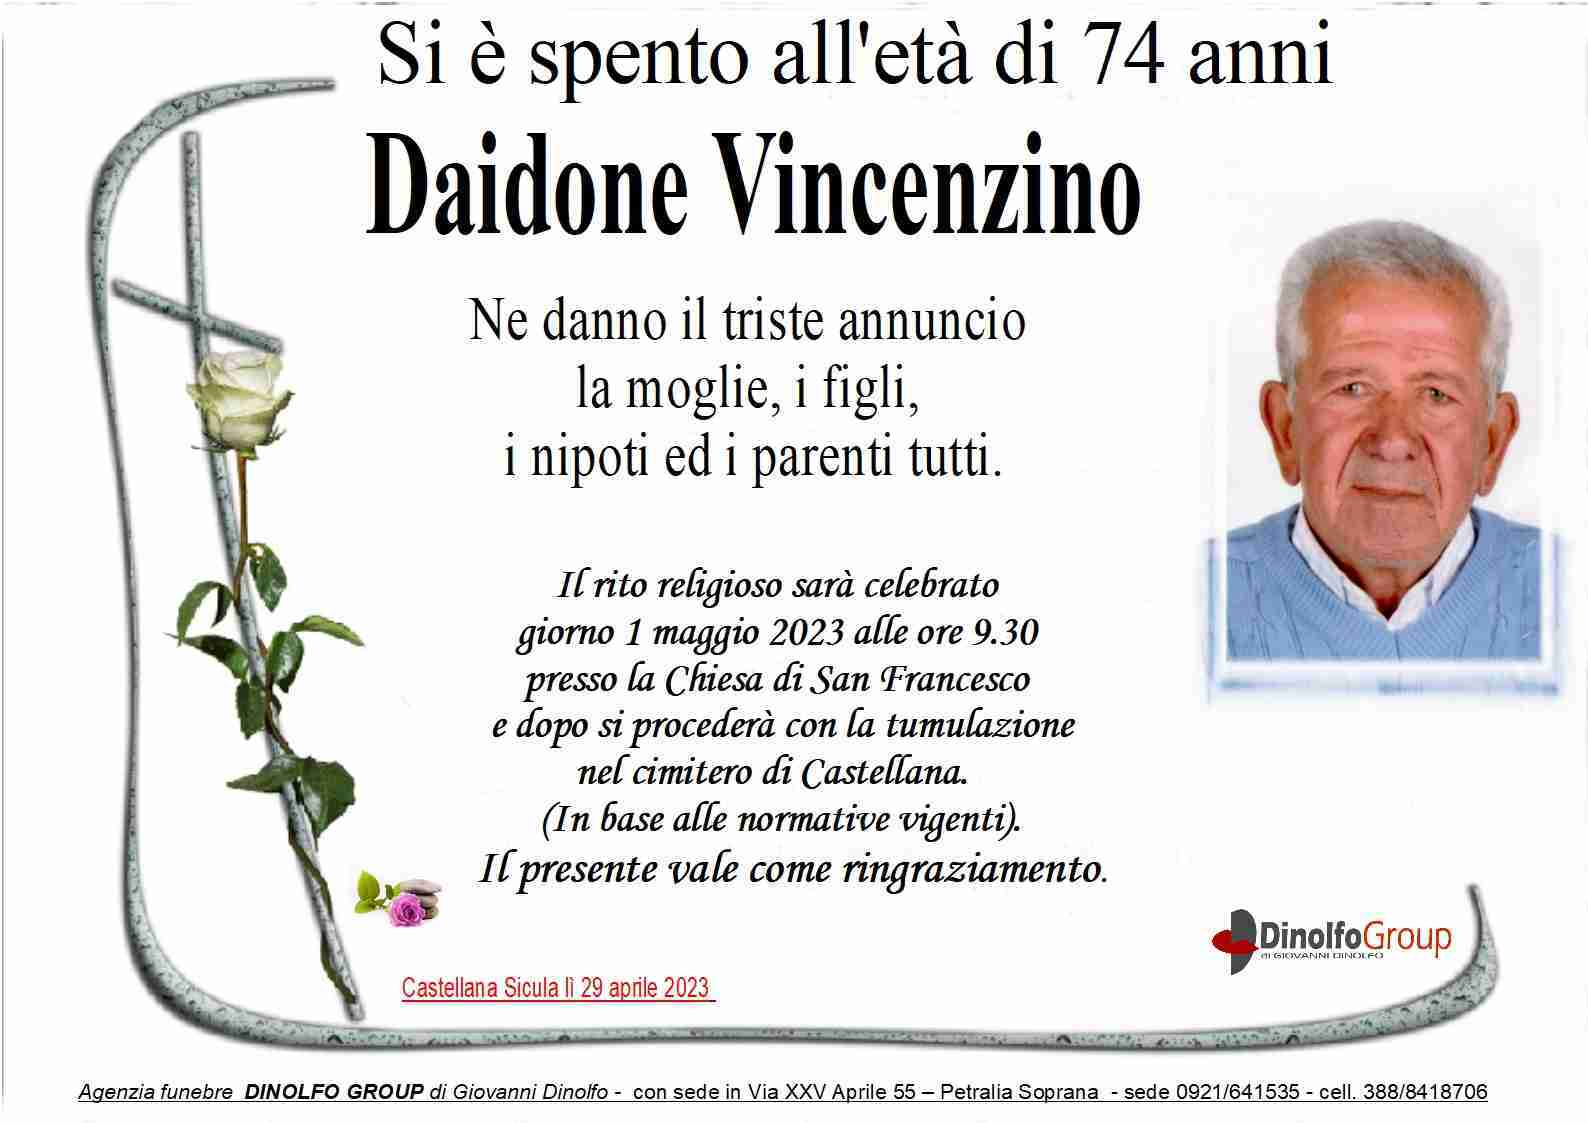 Vincenzino Daidone